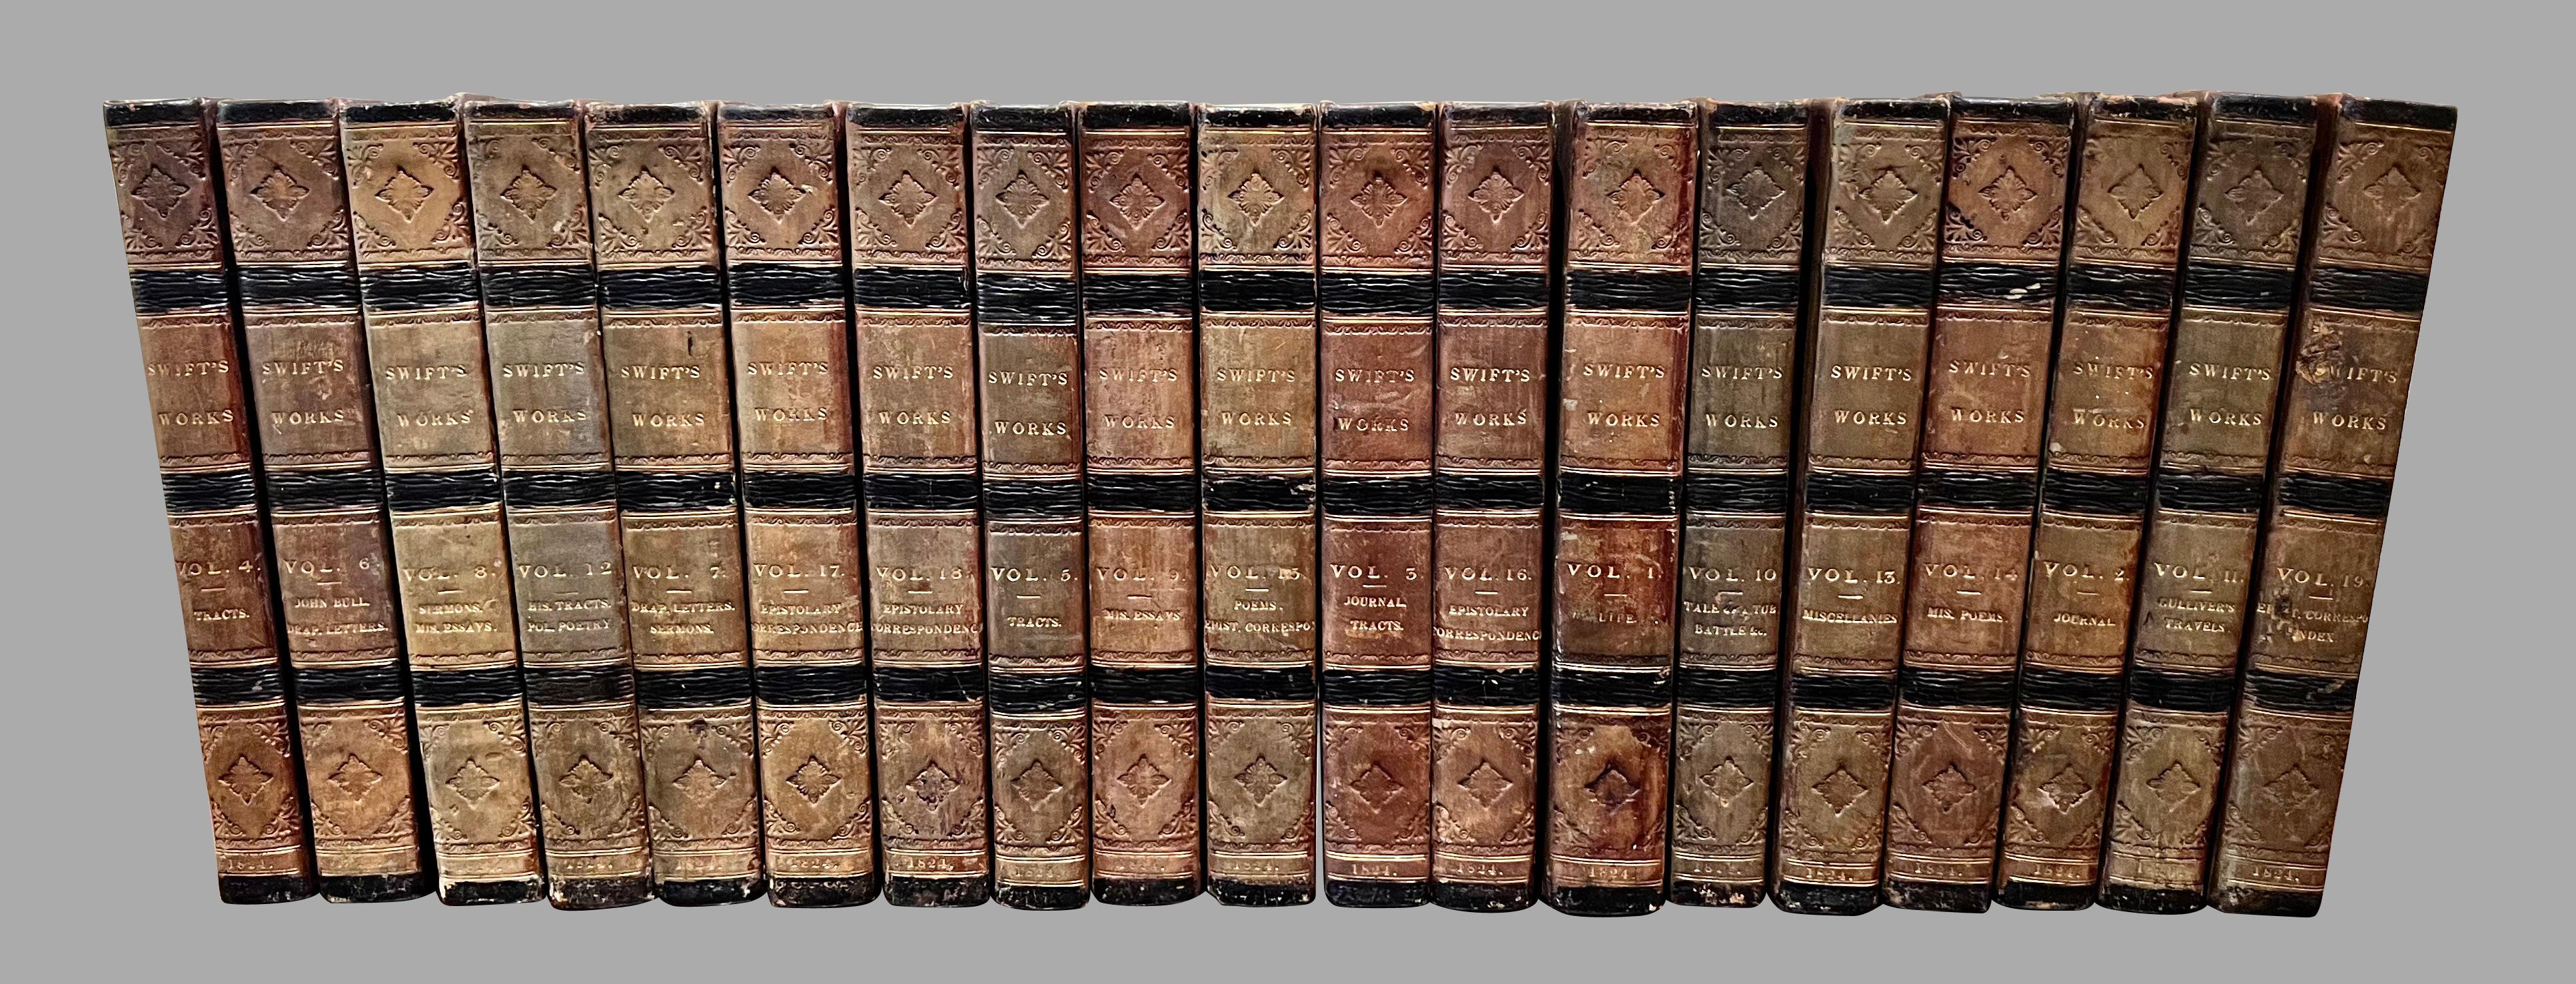 Die Werke von Jonathan Swift (1667-1745)  Zweite vollständige Ausgabe in 19 ledergebundenen Bänden, veröffentlicht für Archibald Constable and Co. Edinburgh und Hurst, Robinson, and Co. London 1824. Swift war ein berühmter anglo-irischer Essayist,